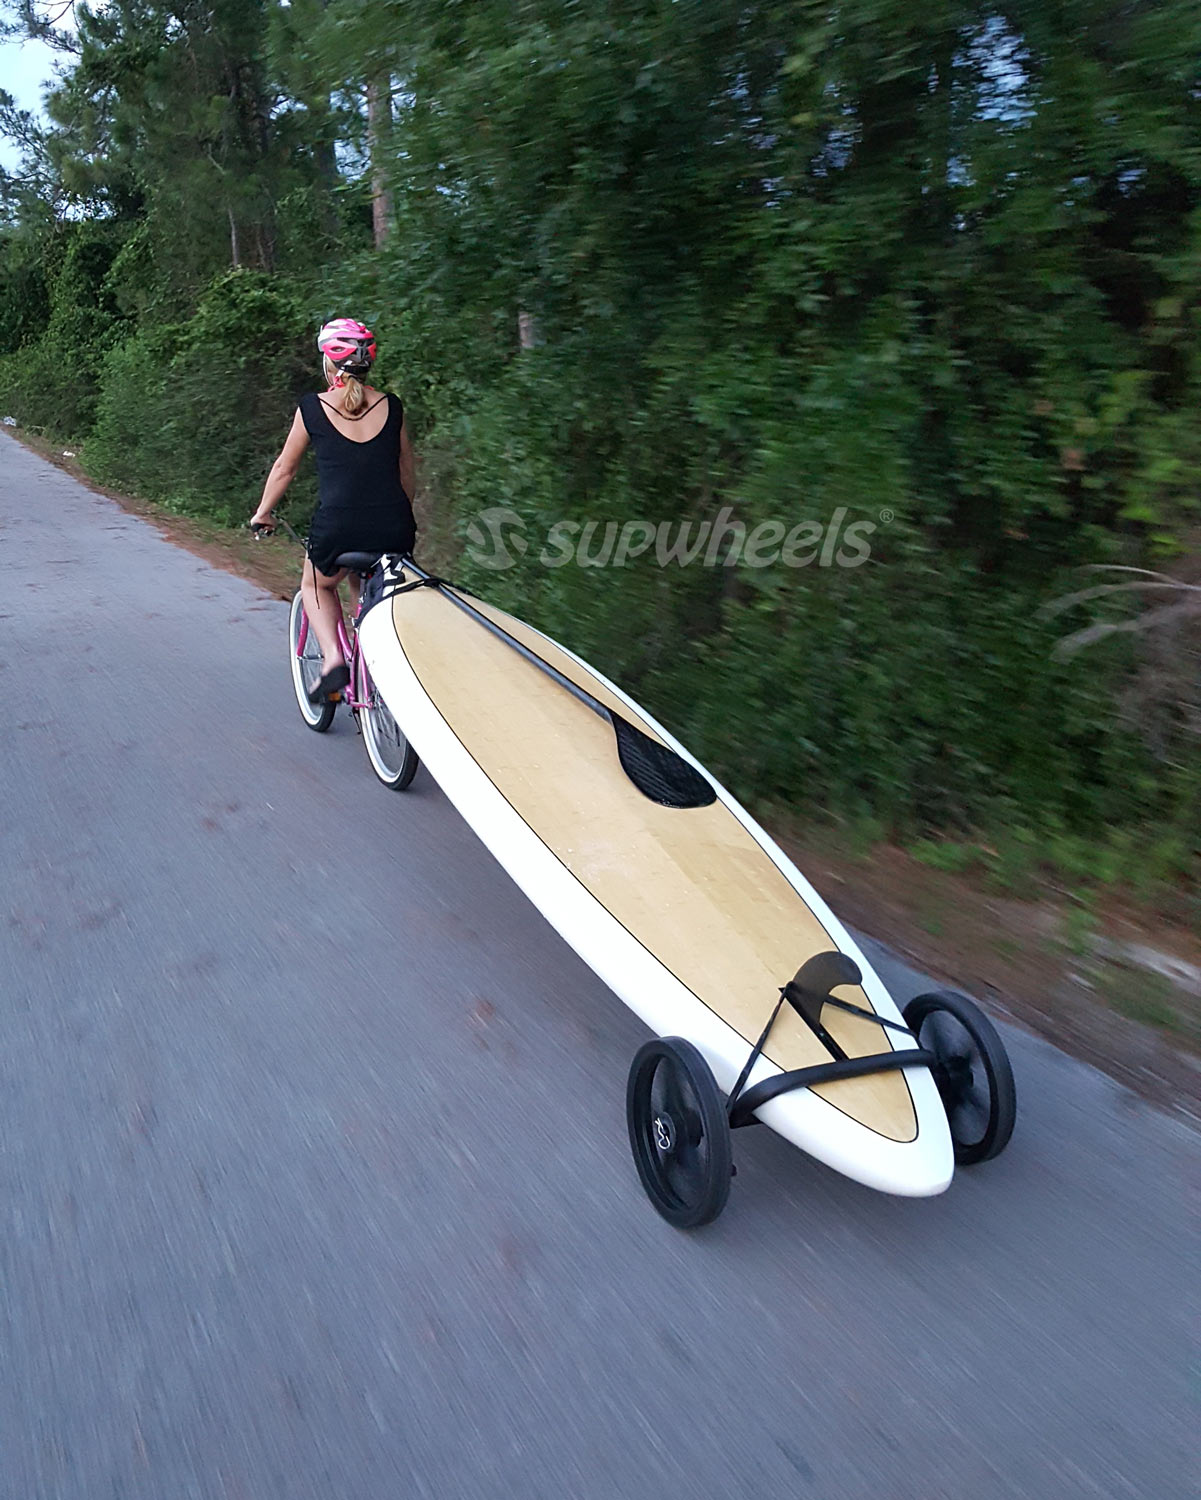 Race paddle board on bike SUP Wheels bike trailer